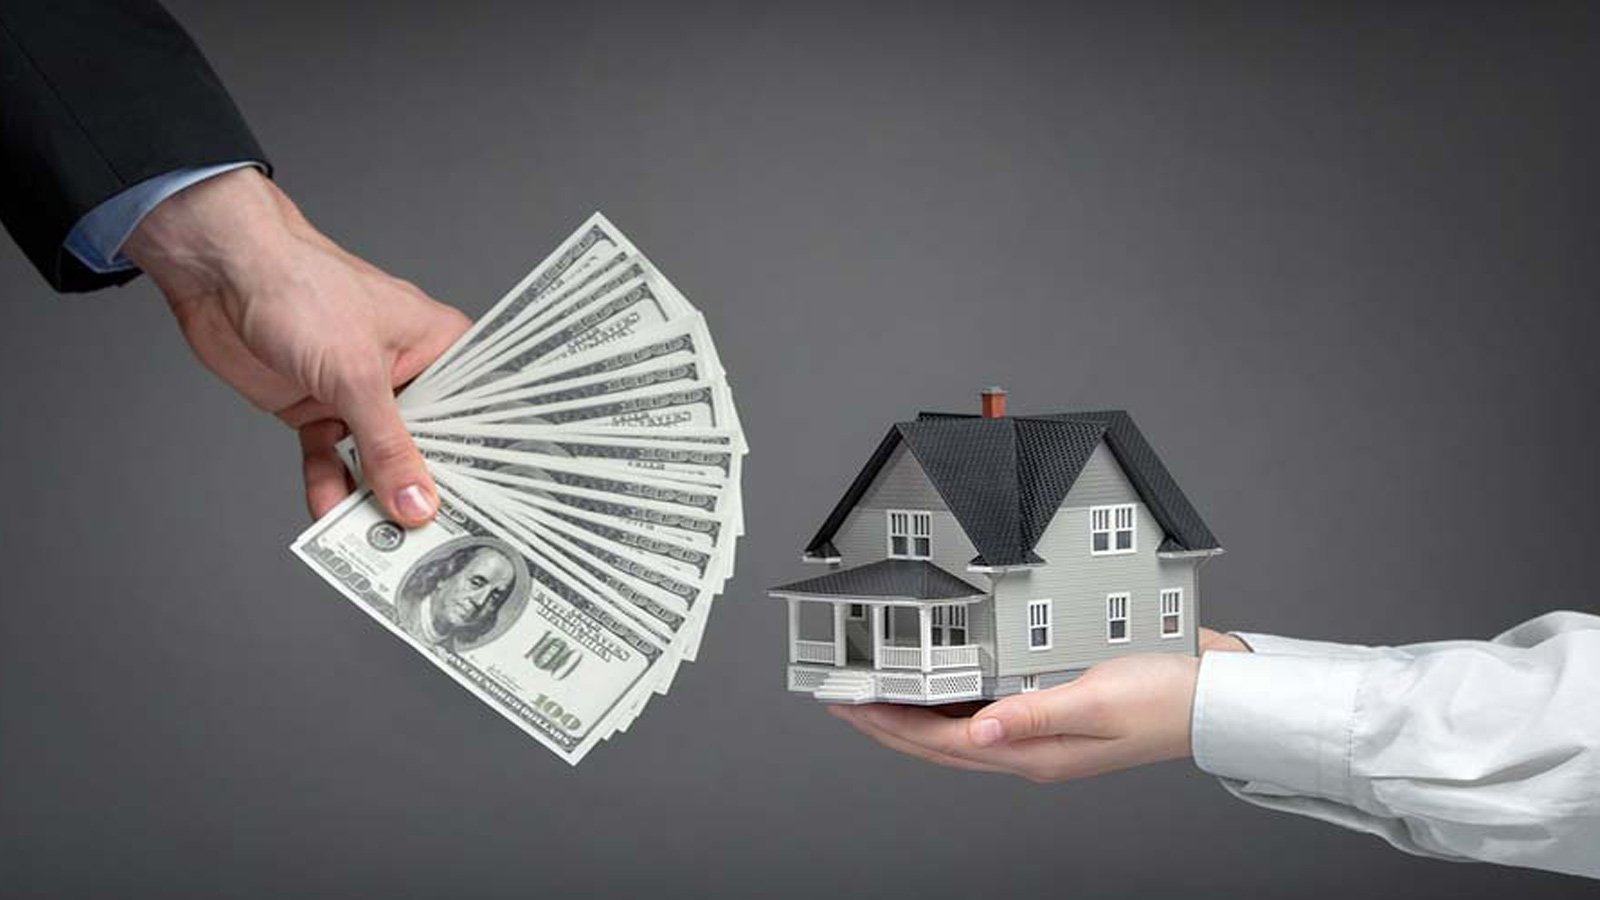 در سرمایه گذاری در بازار املاک، خرید خانه پرطرفدارتر است یا خرید مغازه؟